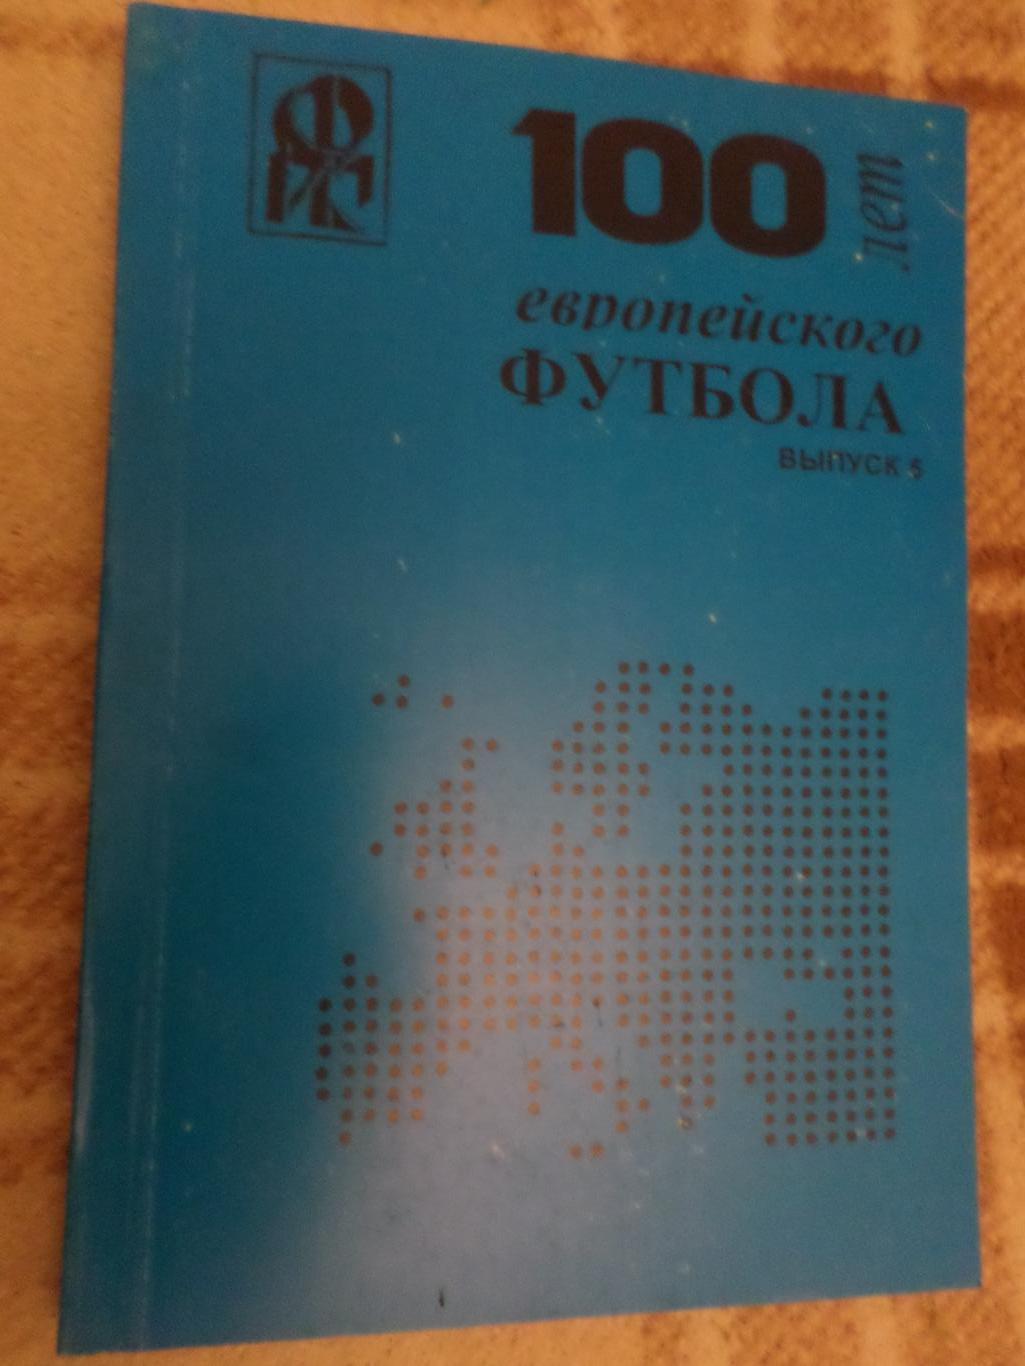 Ю. Ландер - 100 лет европейского футбола вып. 5 Харьков 2000 г